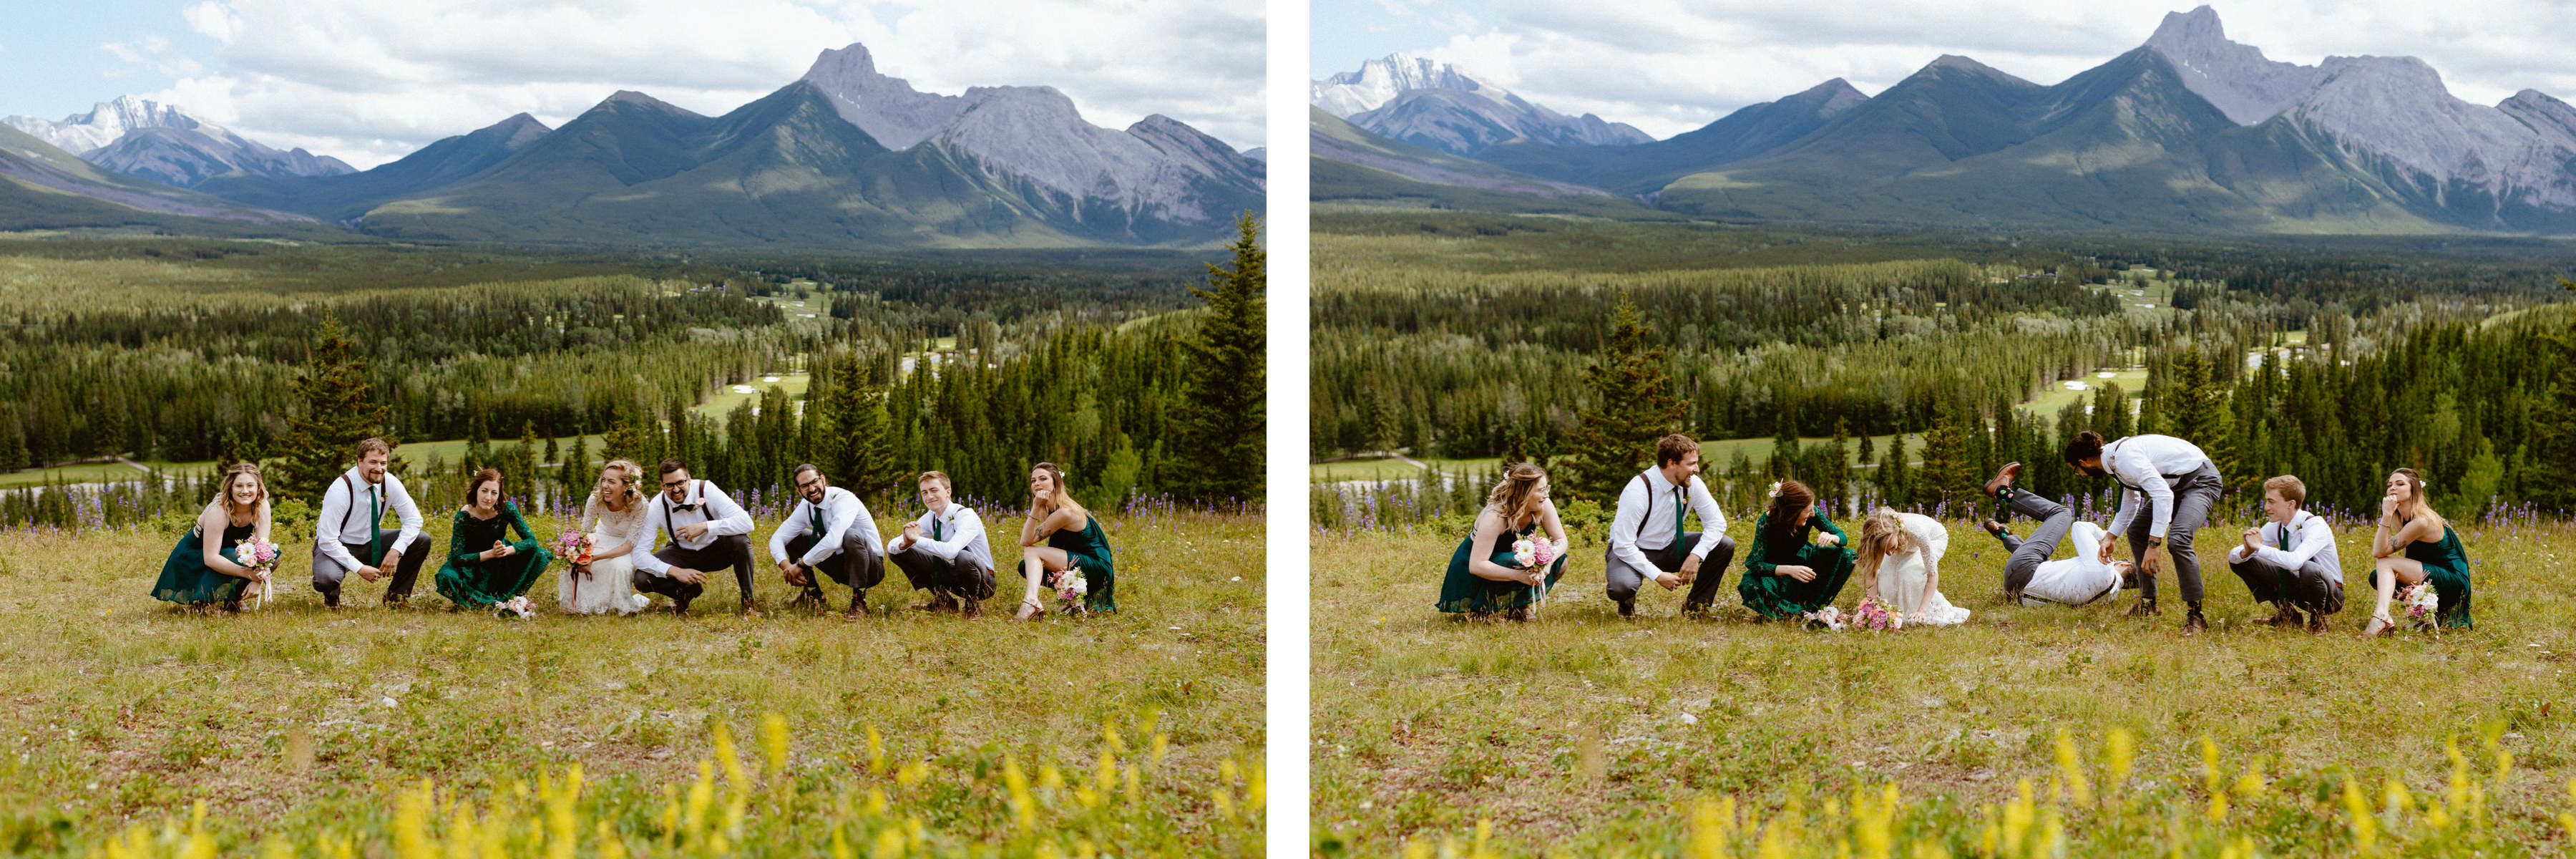 Kananaskis Wedding Photography at Pomeroy Mountain Lodge - Image  39